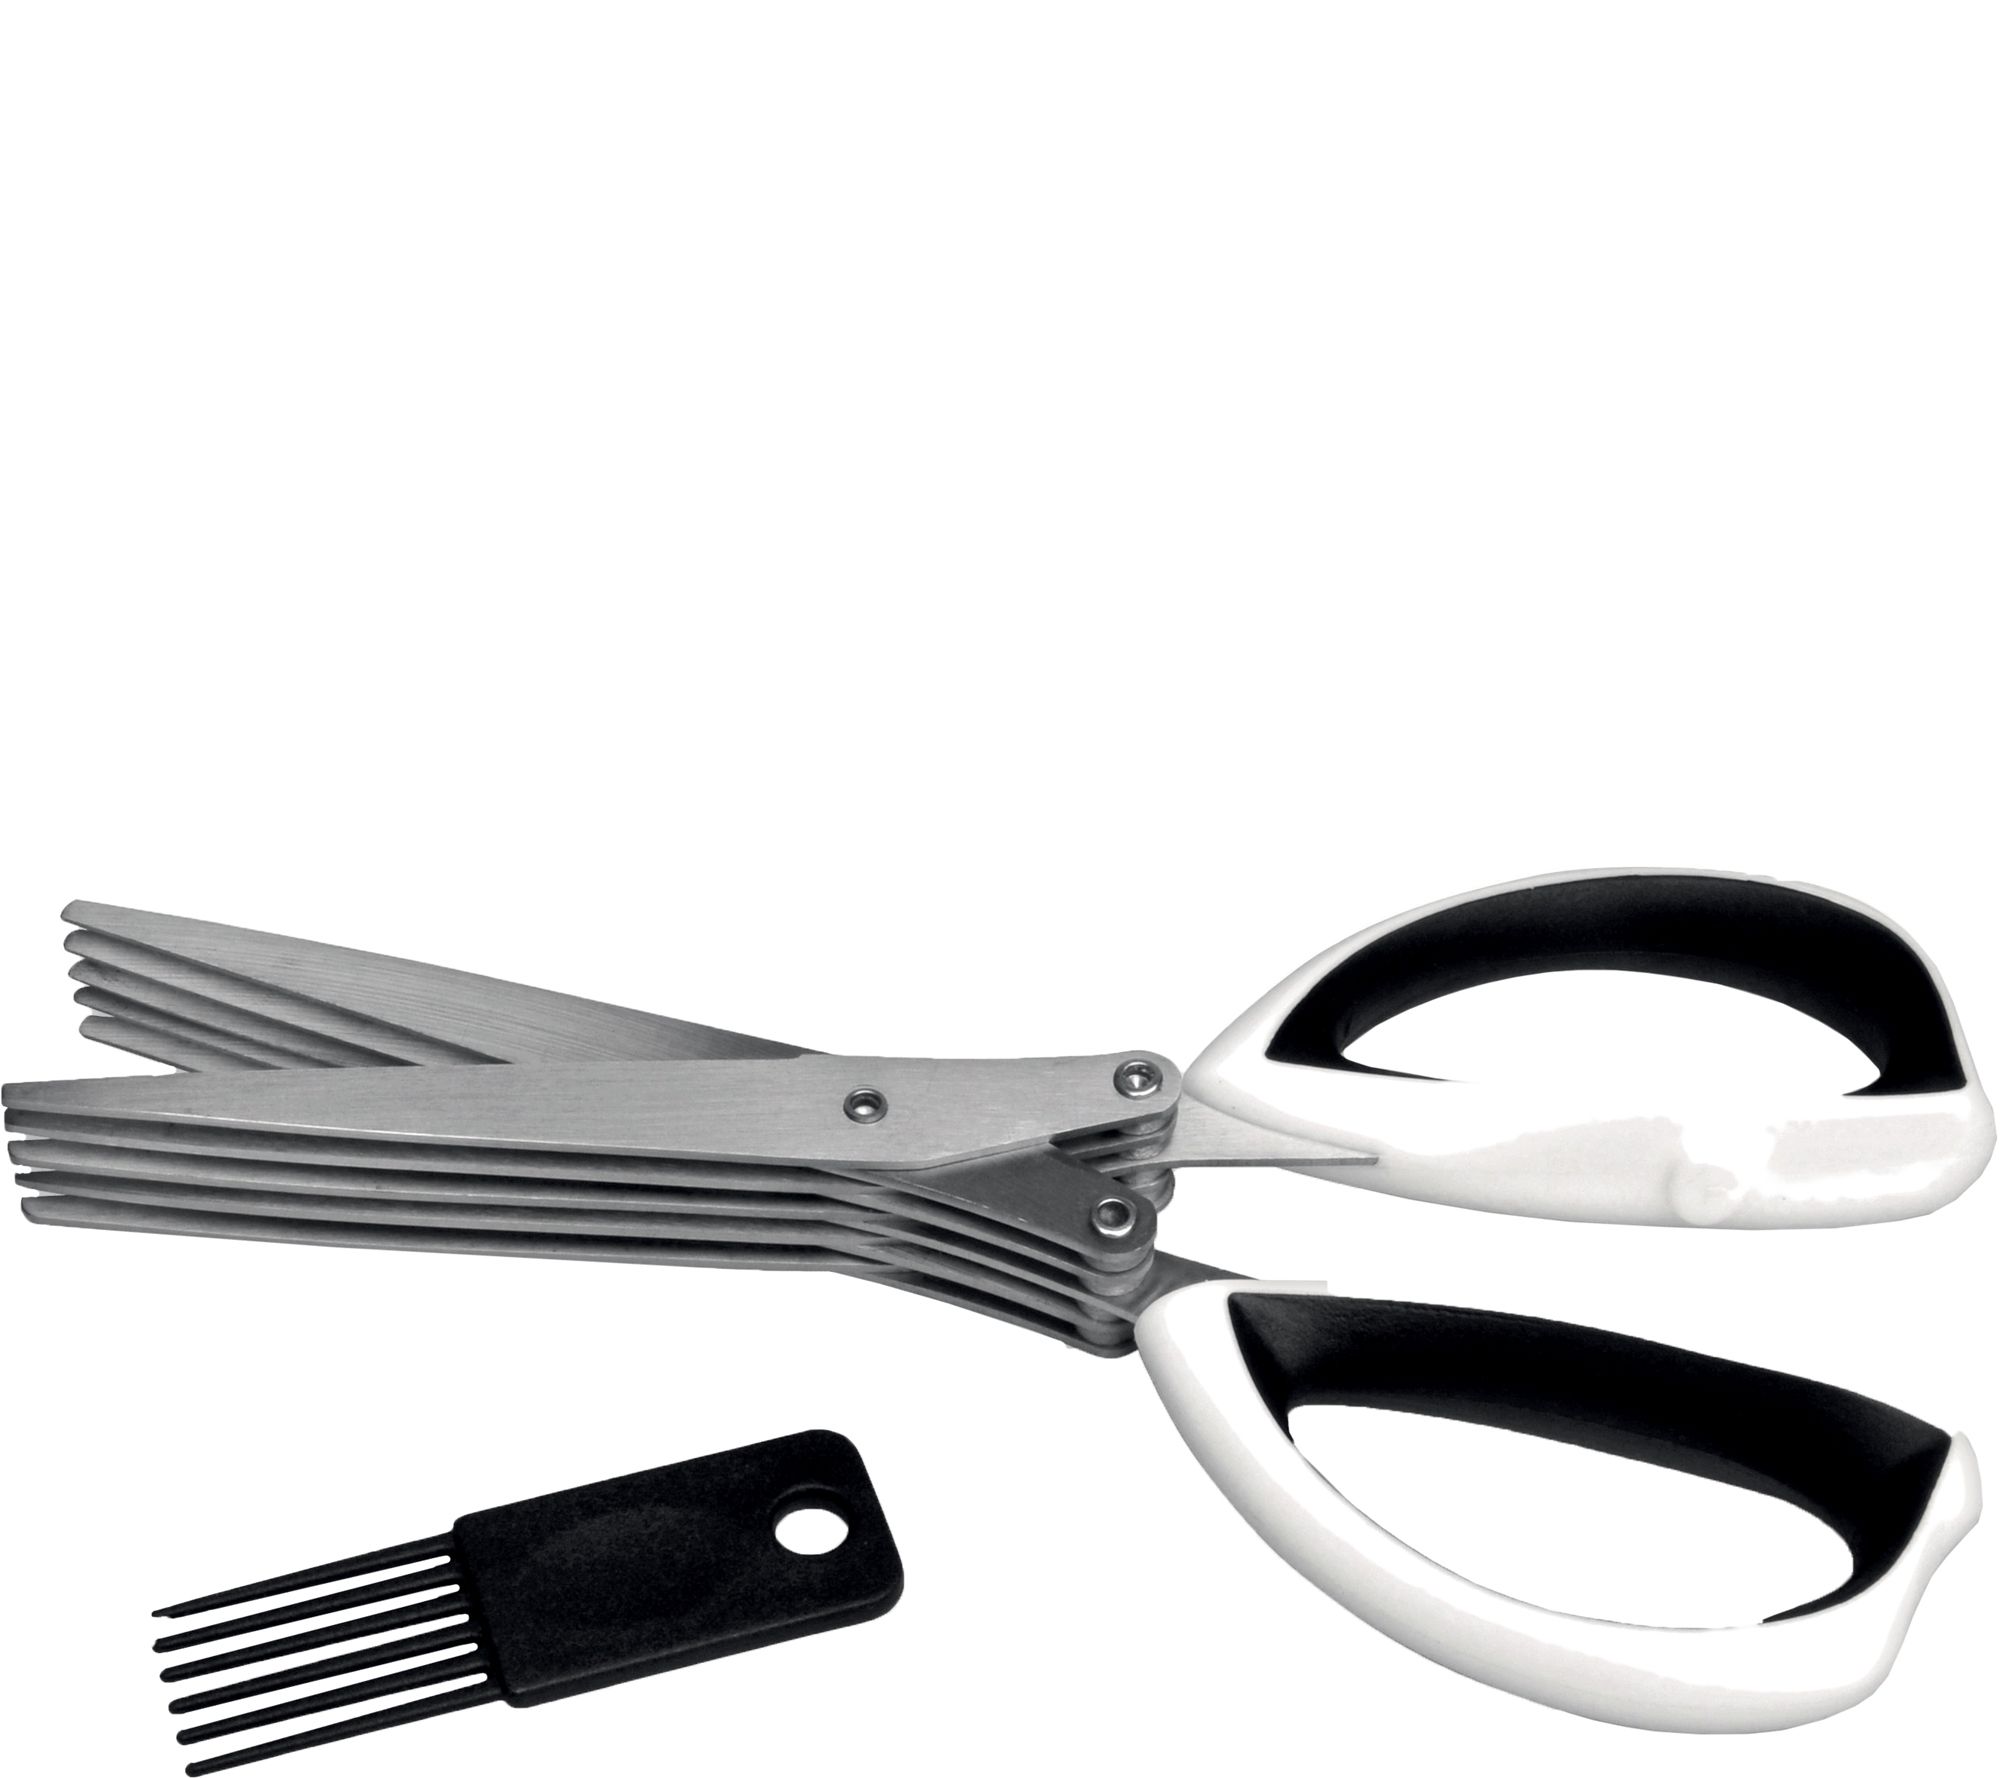 Multi-Blade Herb Scissors